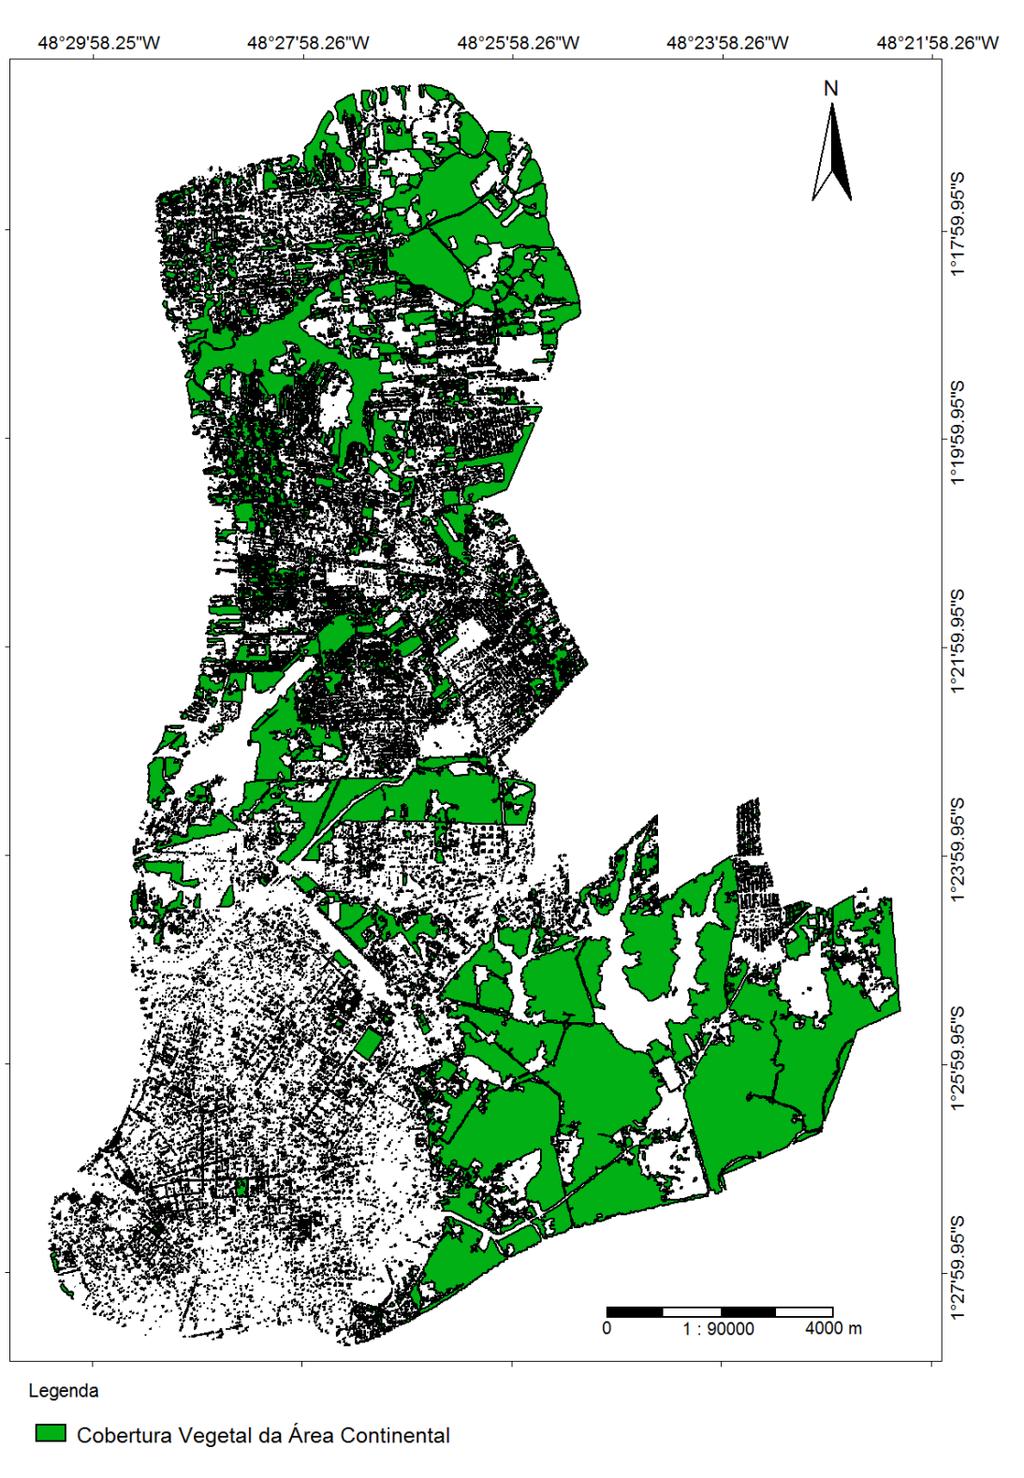 Mapa de cobertura vegetal da área continental da cidade de